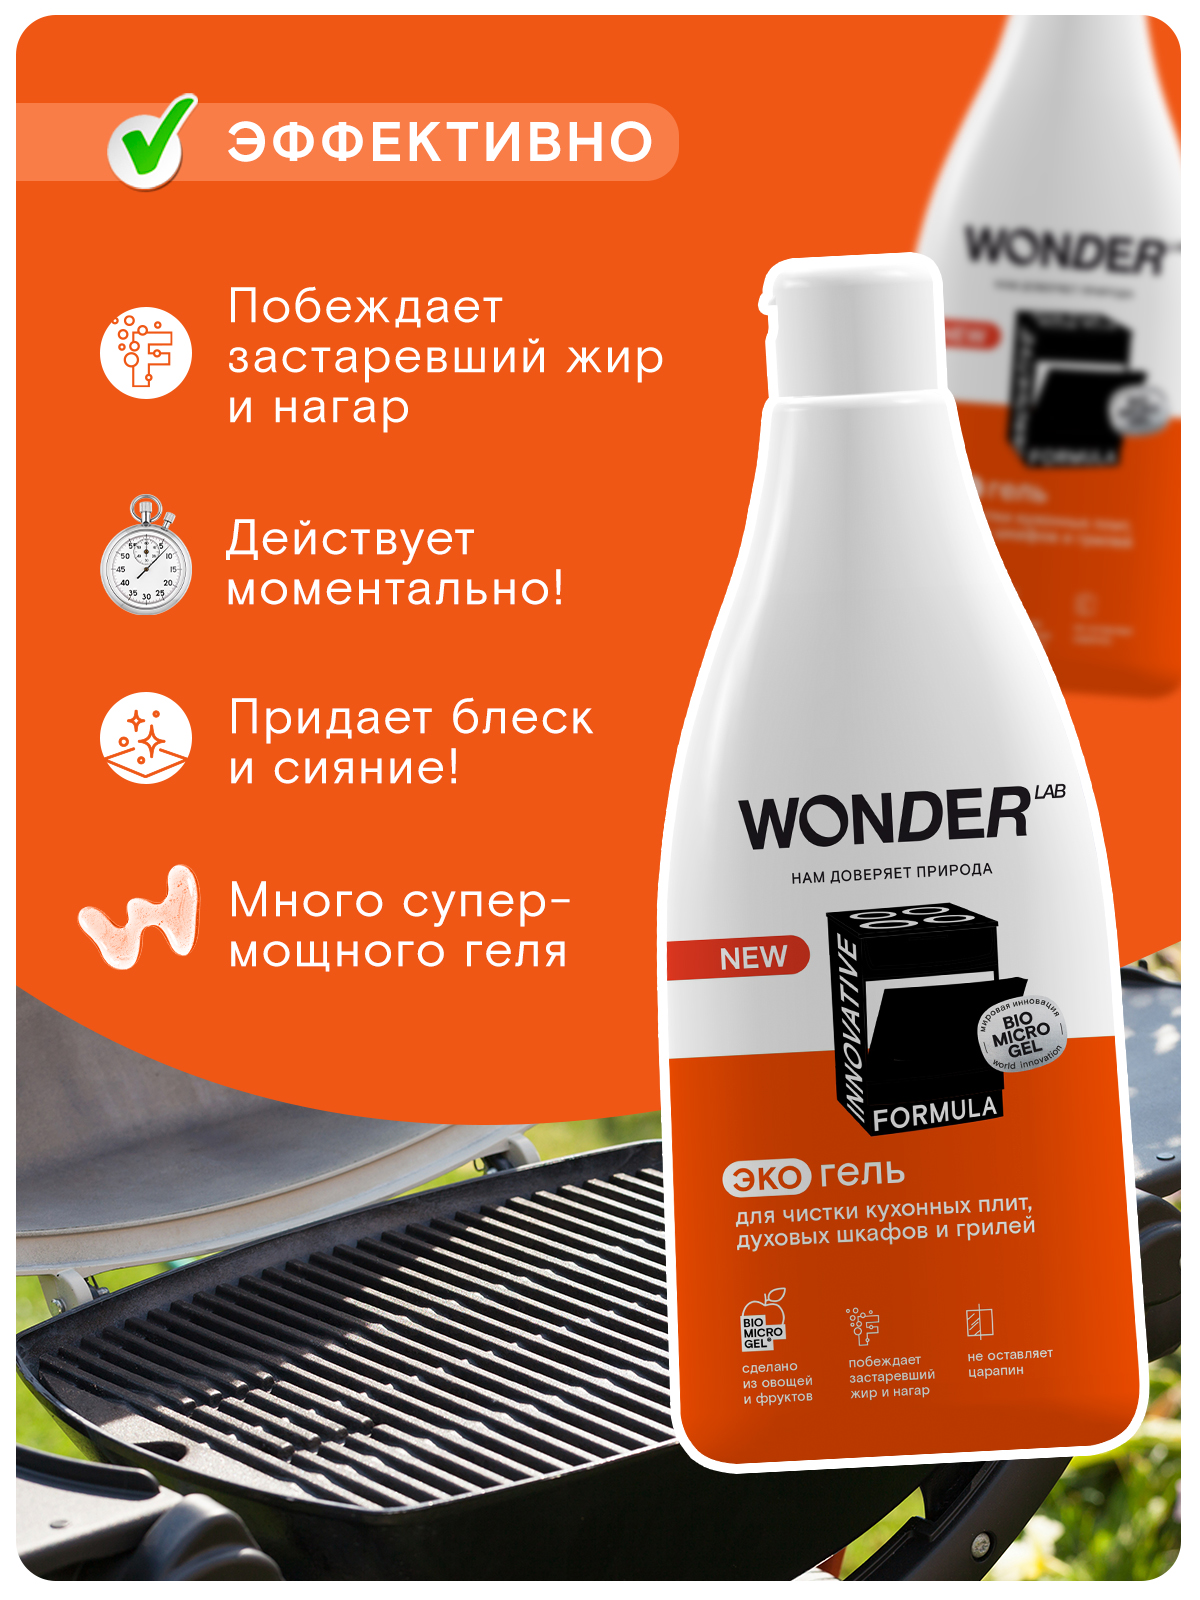 Wonder Lab Экогель для чистки кухонных плит и духовых шкафов и грилей 0,55 л